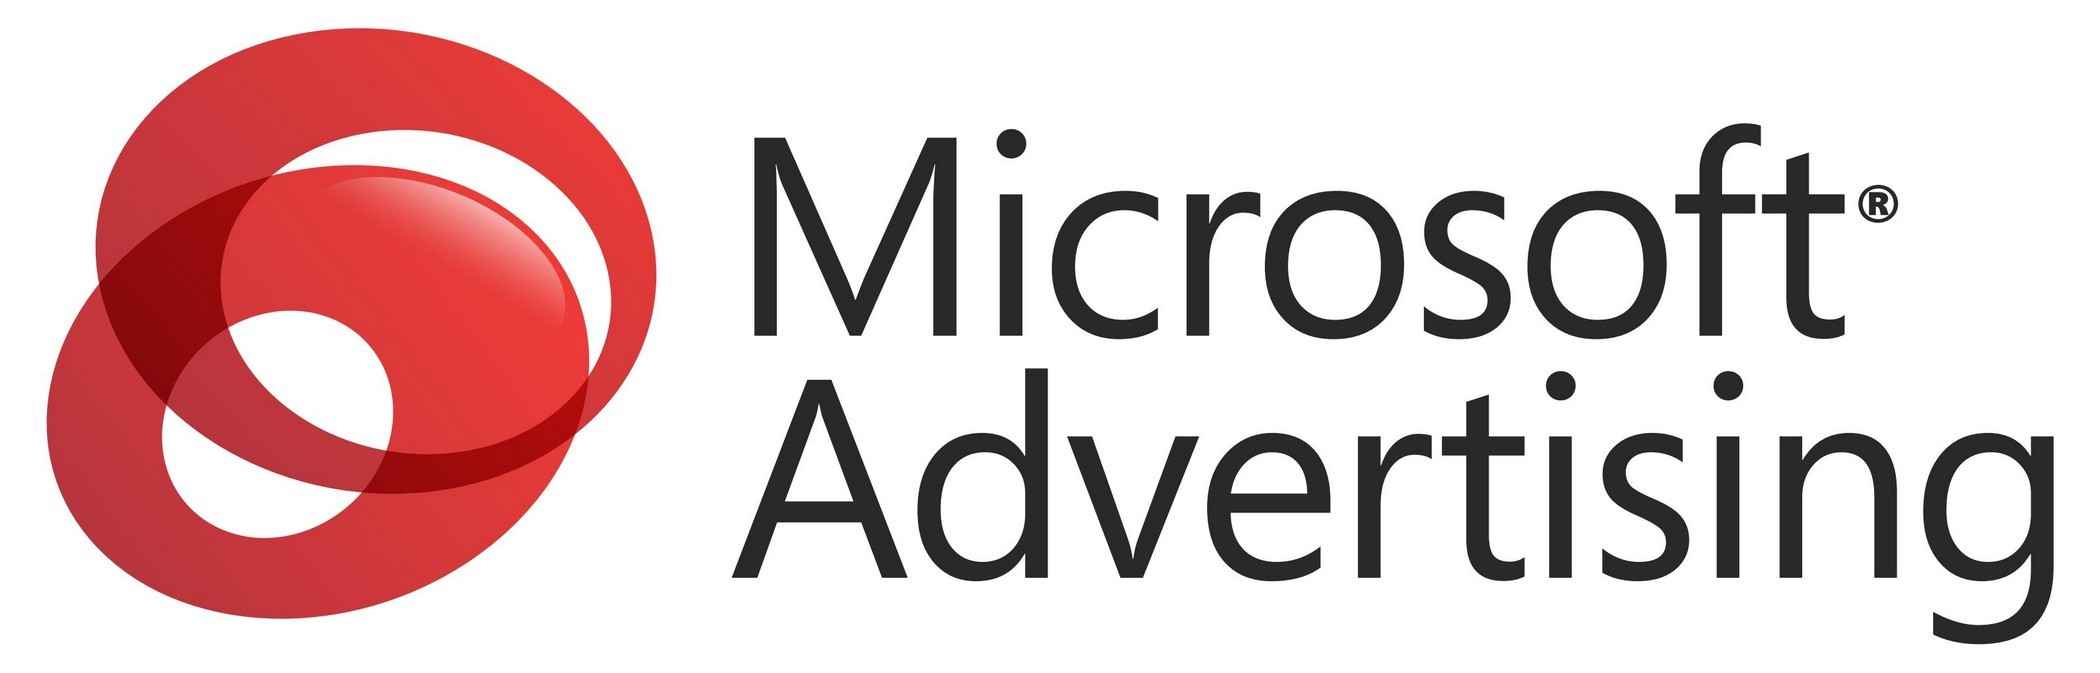 Microsoft Advertising Logo png